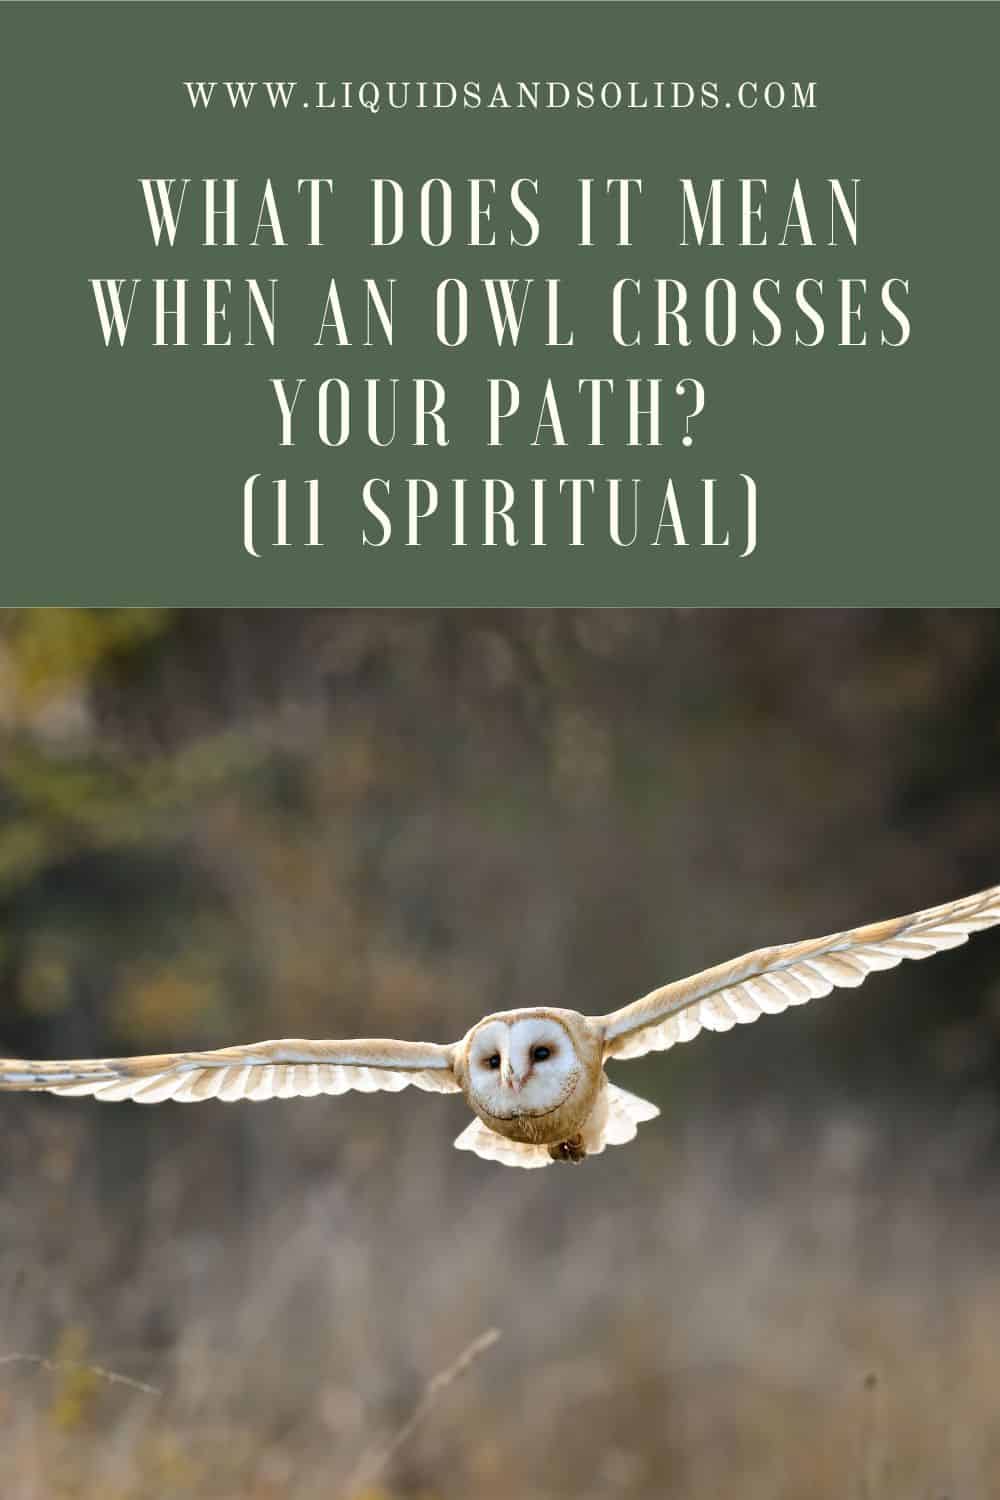 Owl symbolism